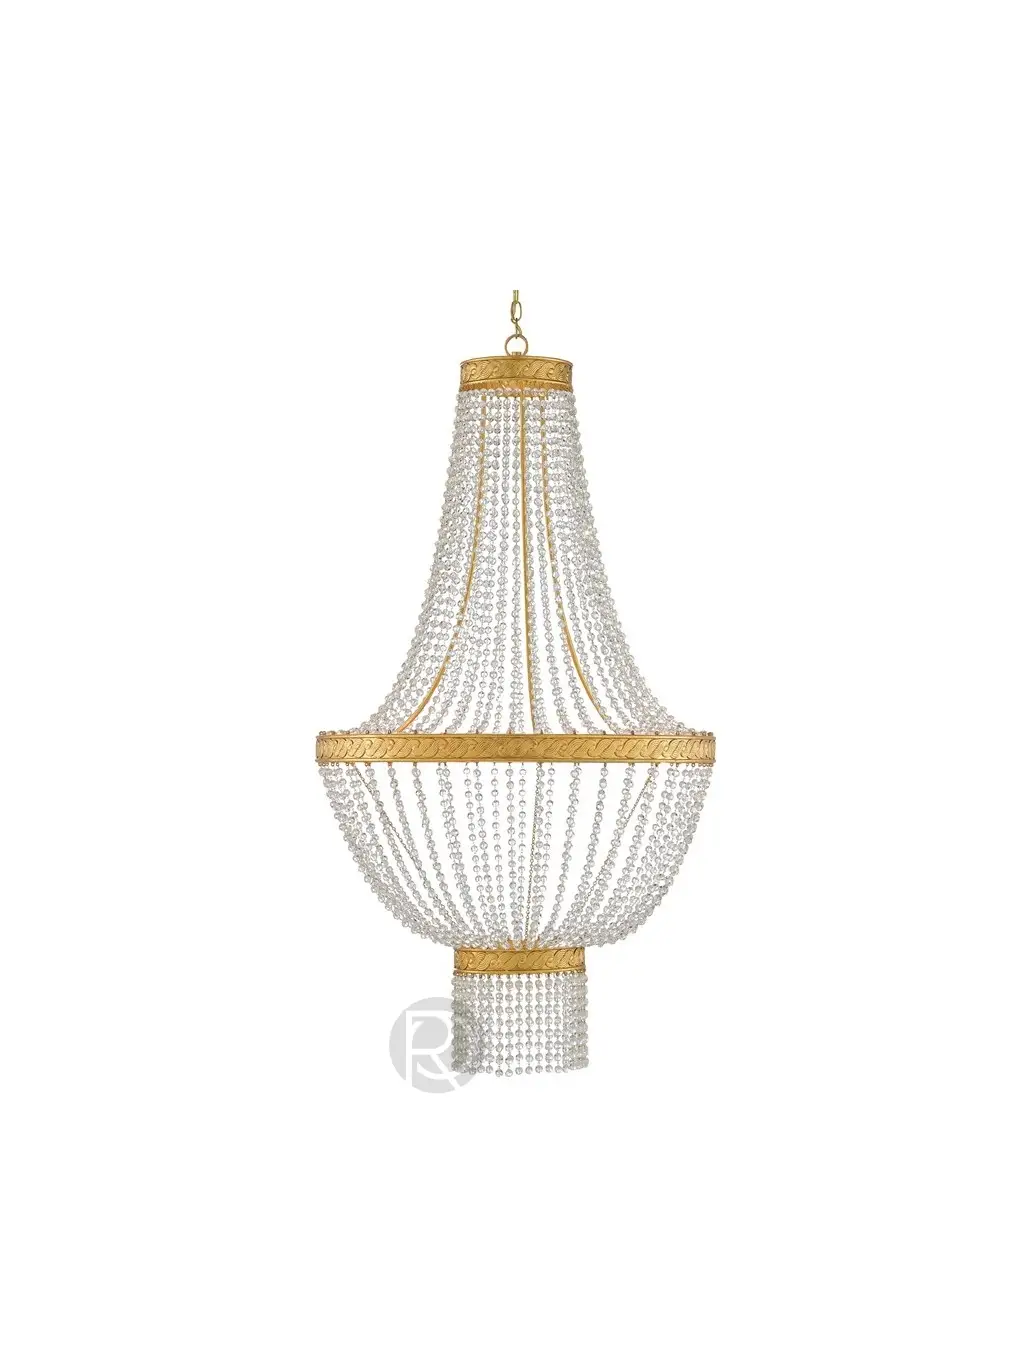 MIRADOR chandelier by Currey & Company